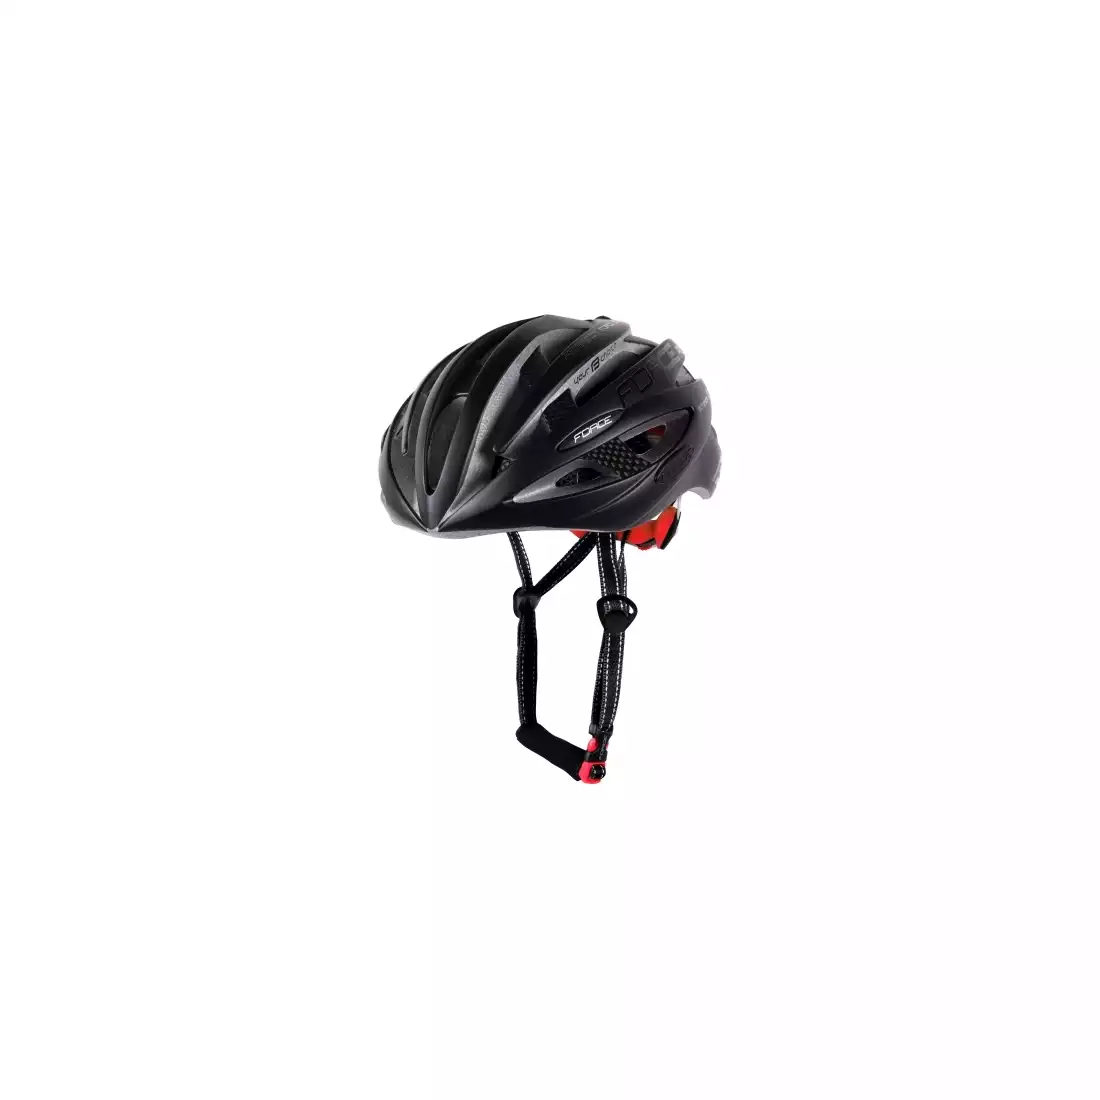 FORCE ROAD kask rowerowy, czarny mat